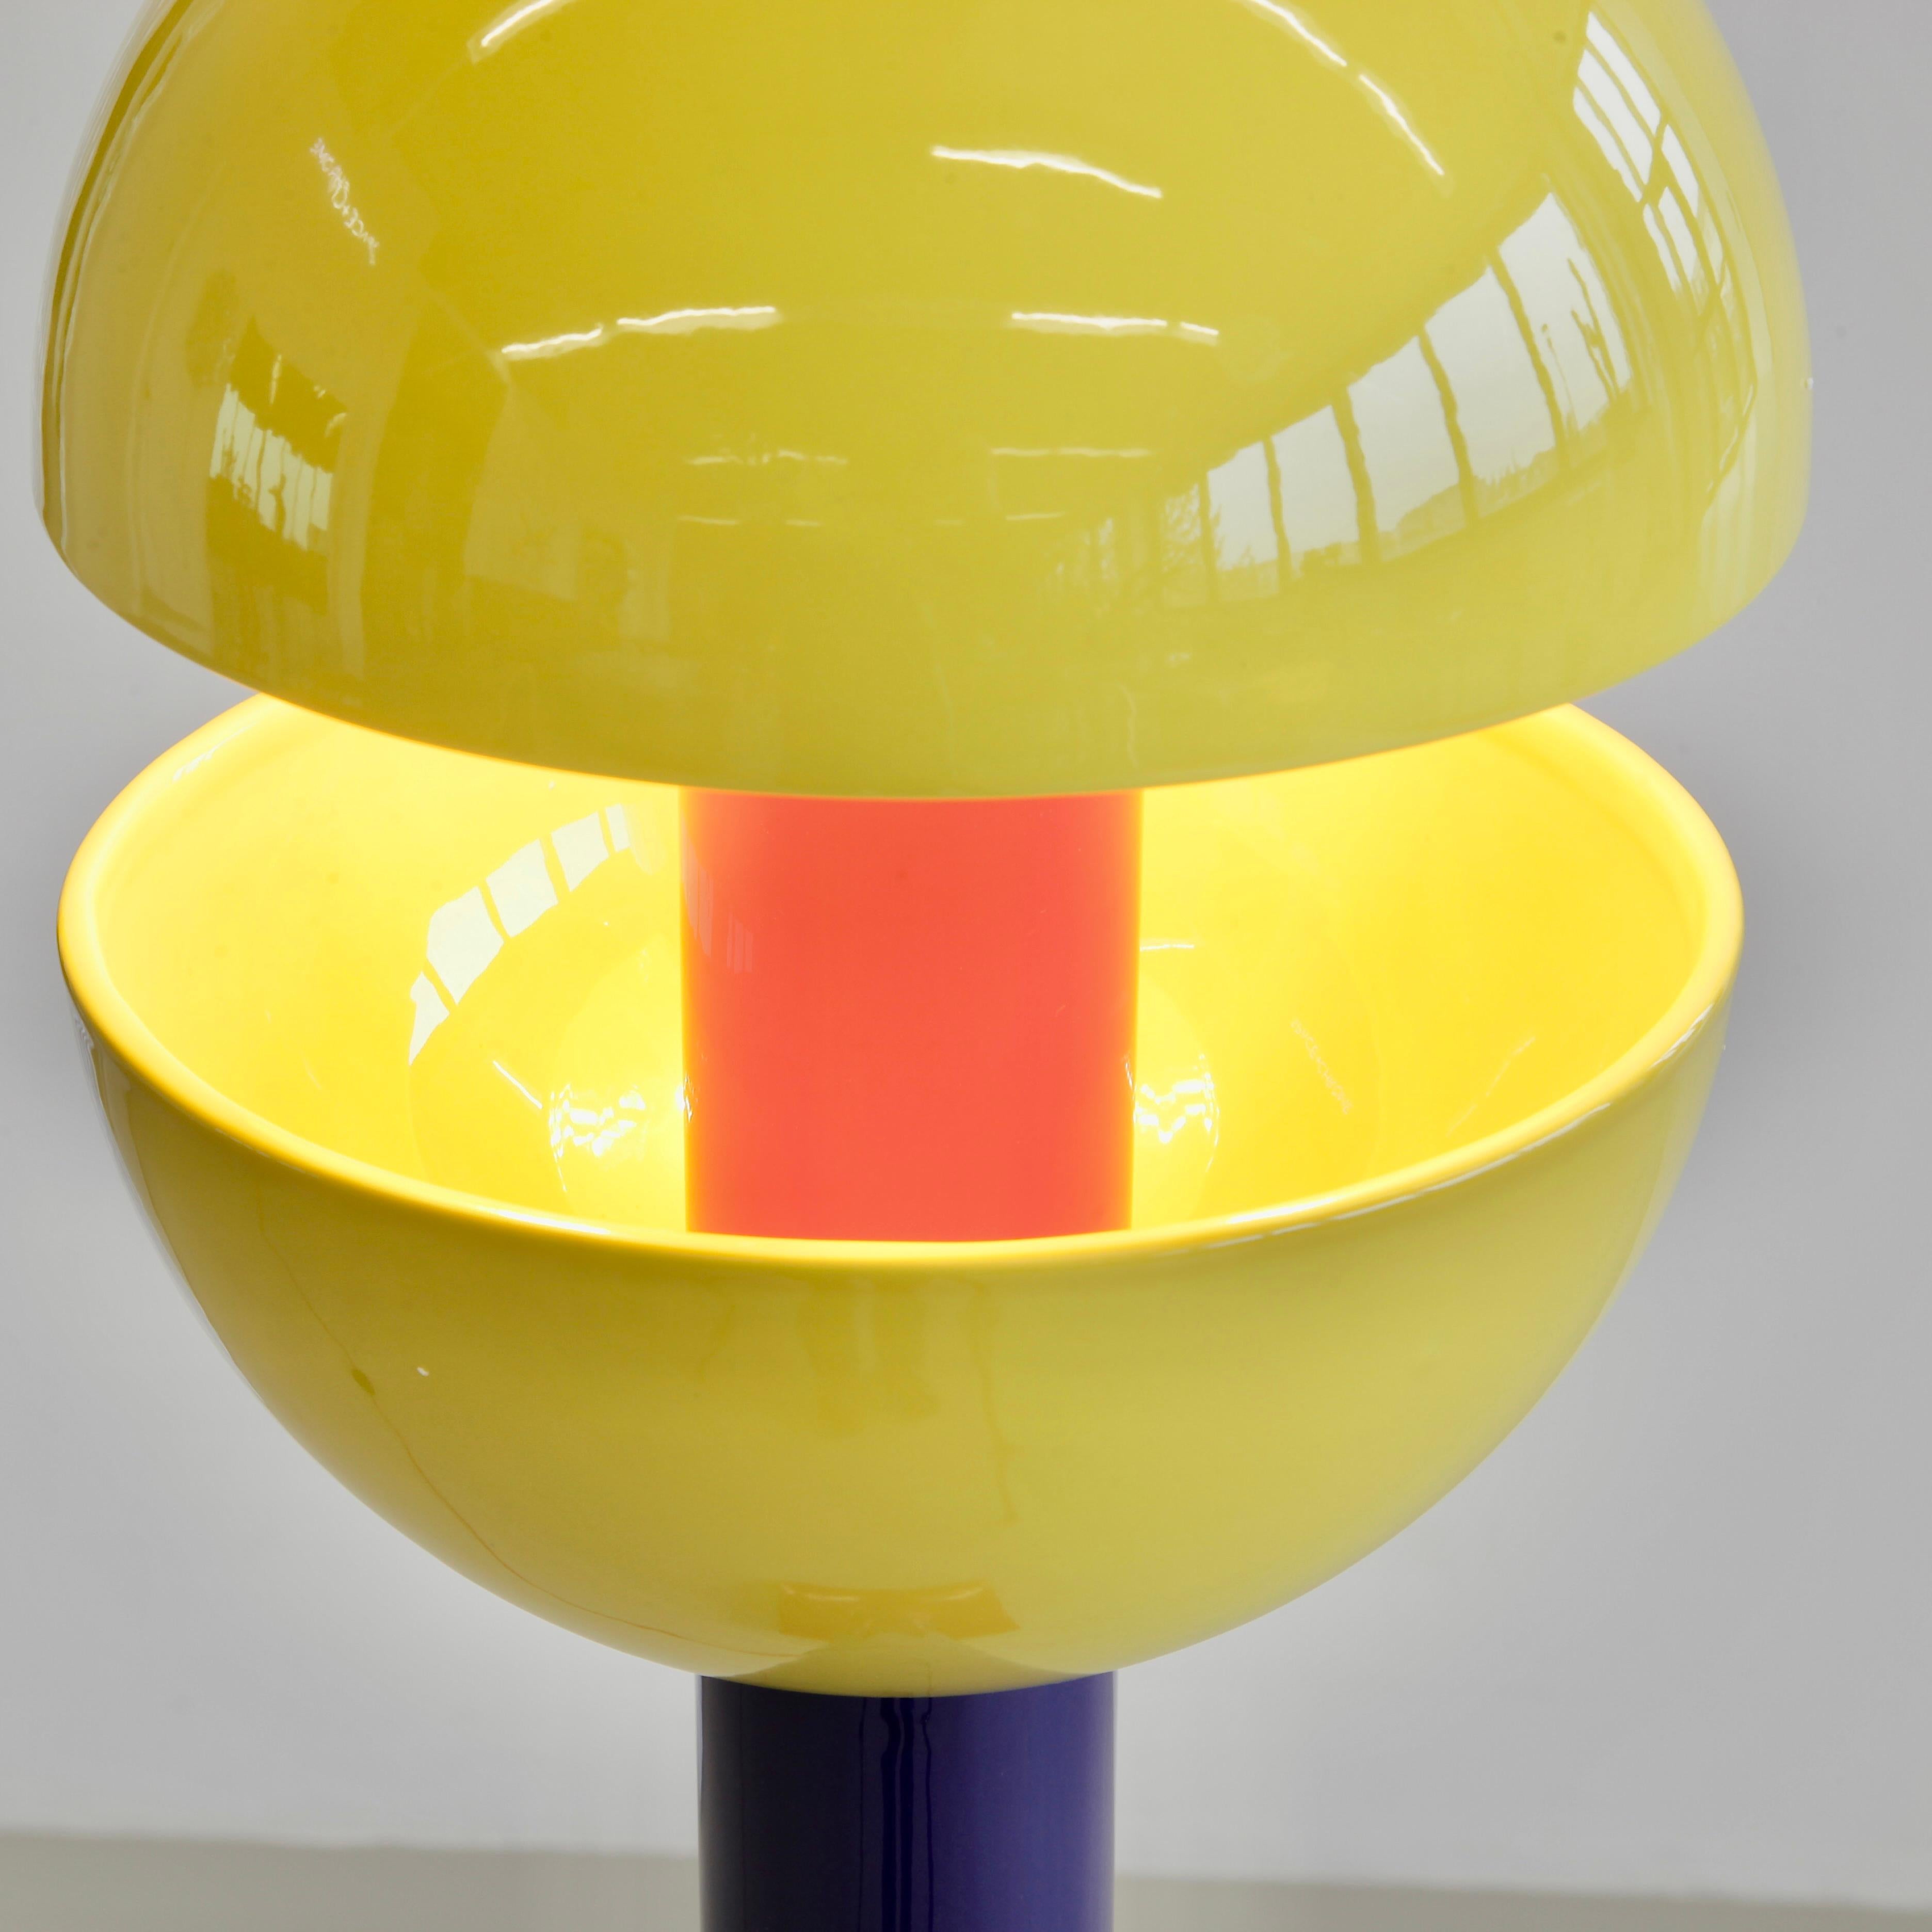 Lampadaire modulaire en céramique, conçu par Adelie Ducasse. France, Ducasse, 2022.

Lampadaire en céramique, composé d'une sélection de pièces modulaires, d'un abat-jour en céramique et de deux ampoules LED. Conçu à Paris, fabriqué à la main en